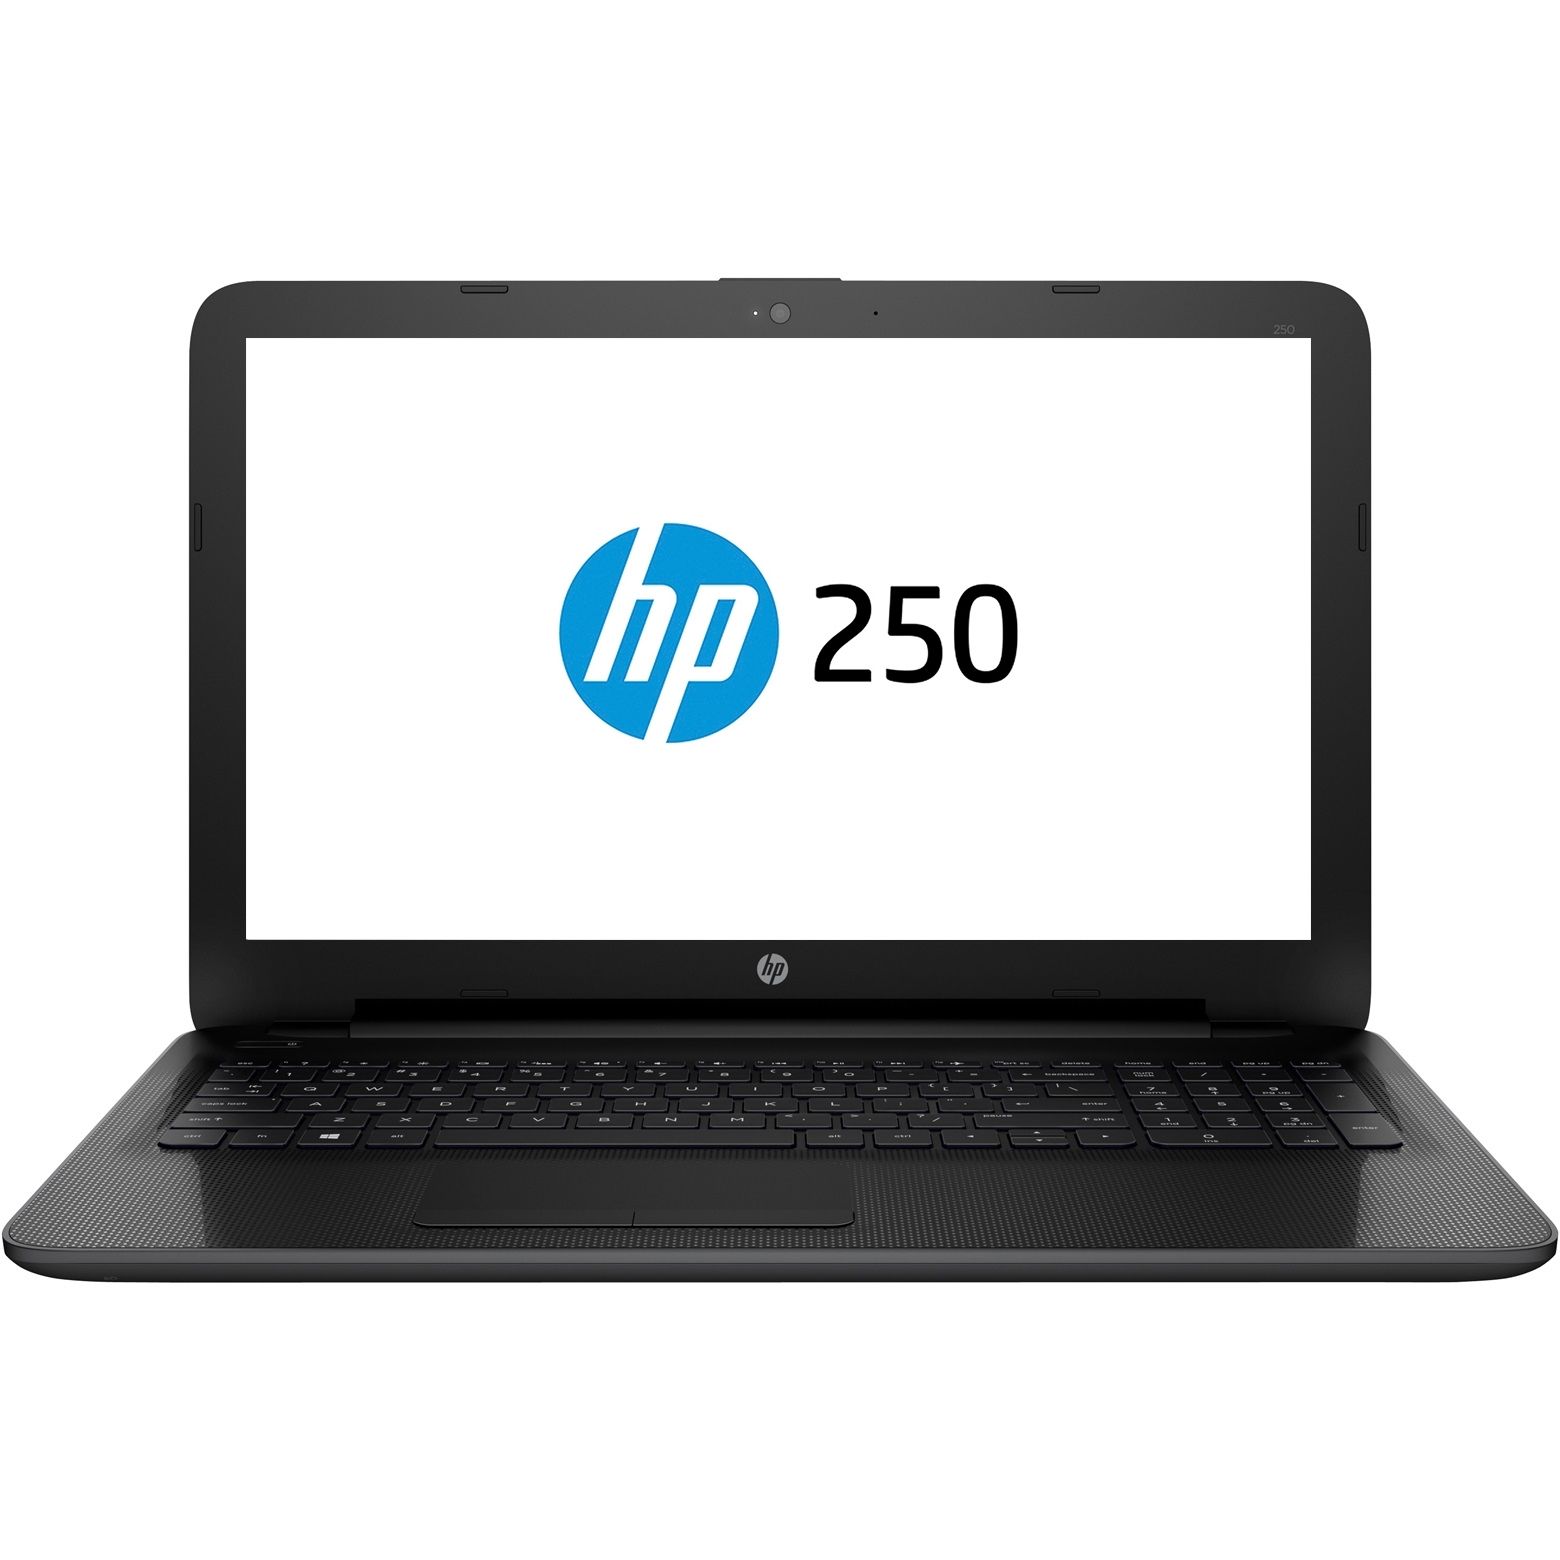  Laptop HP 250 G4, Intel&#174; Celeron&#174; N3050, 4GB DDR3, HDD 500GB, Intel&#174; HD Graphics, Free DOS 